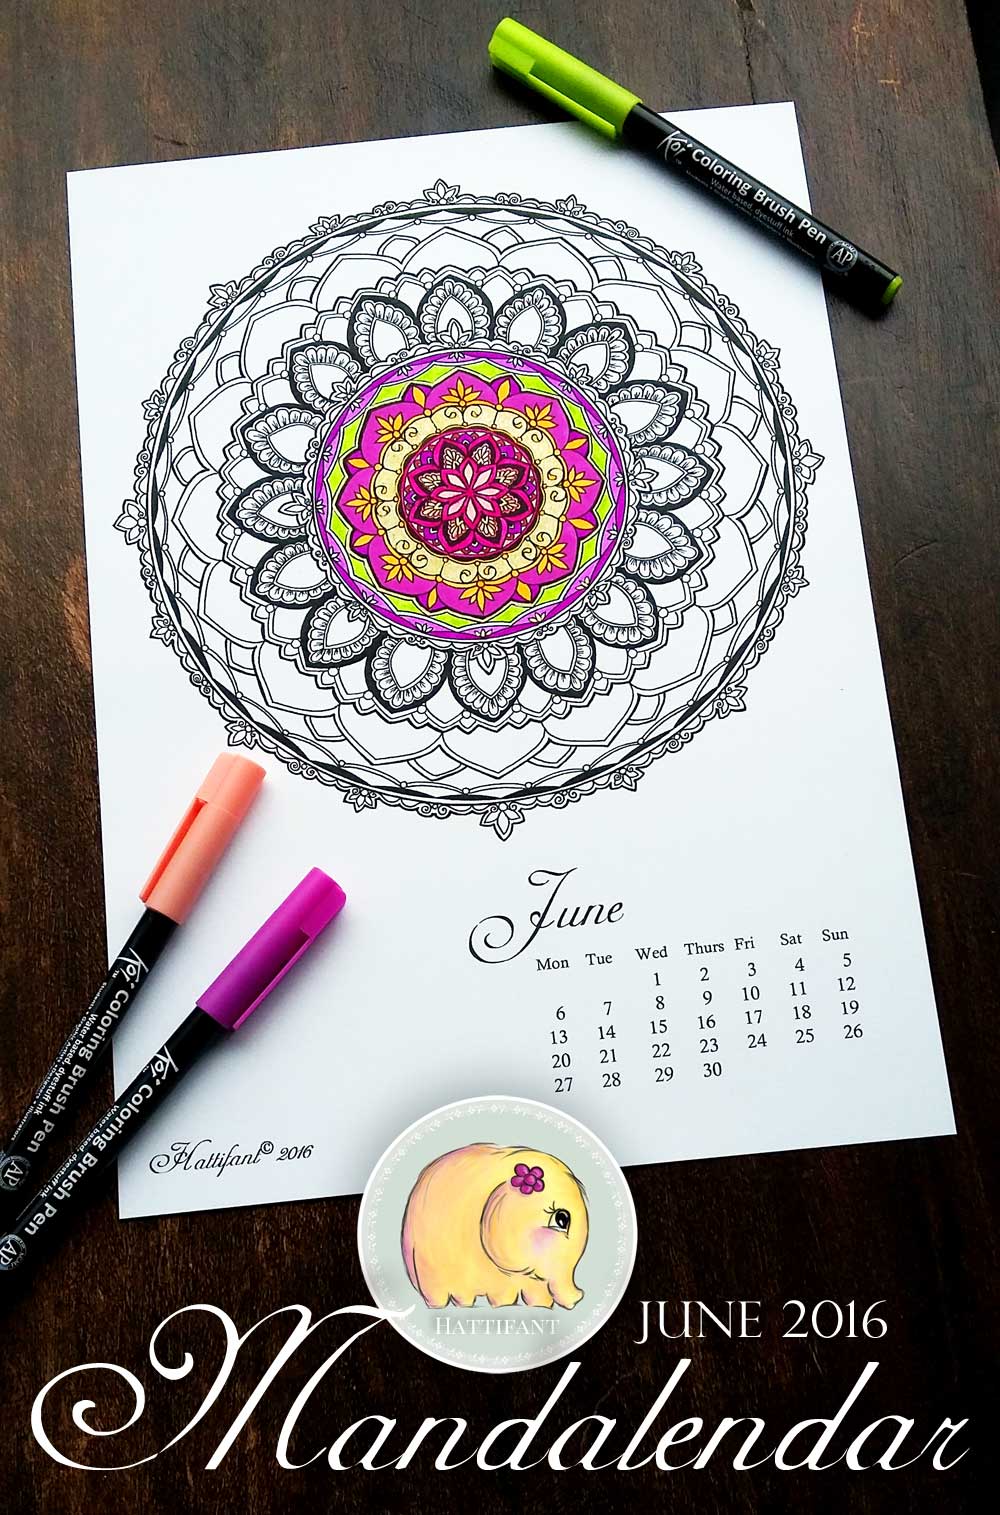 Hattifant Mandalendar Calendar Coloring Page 2016 June